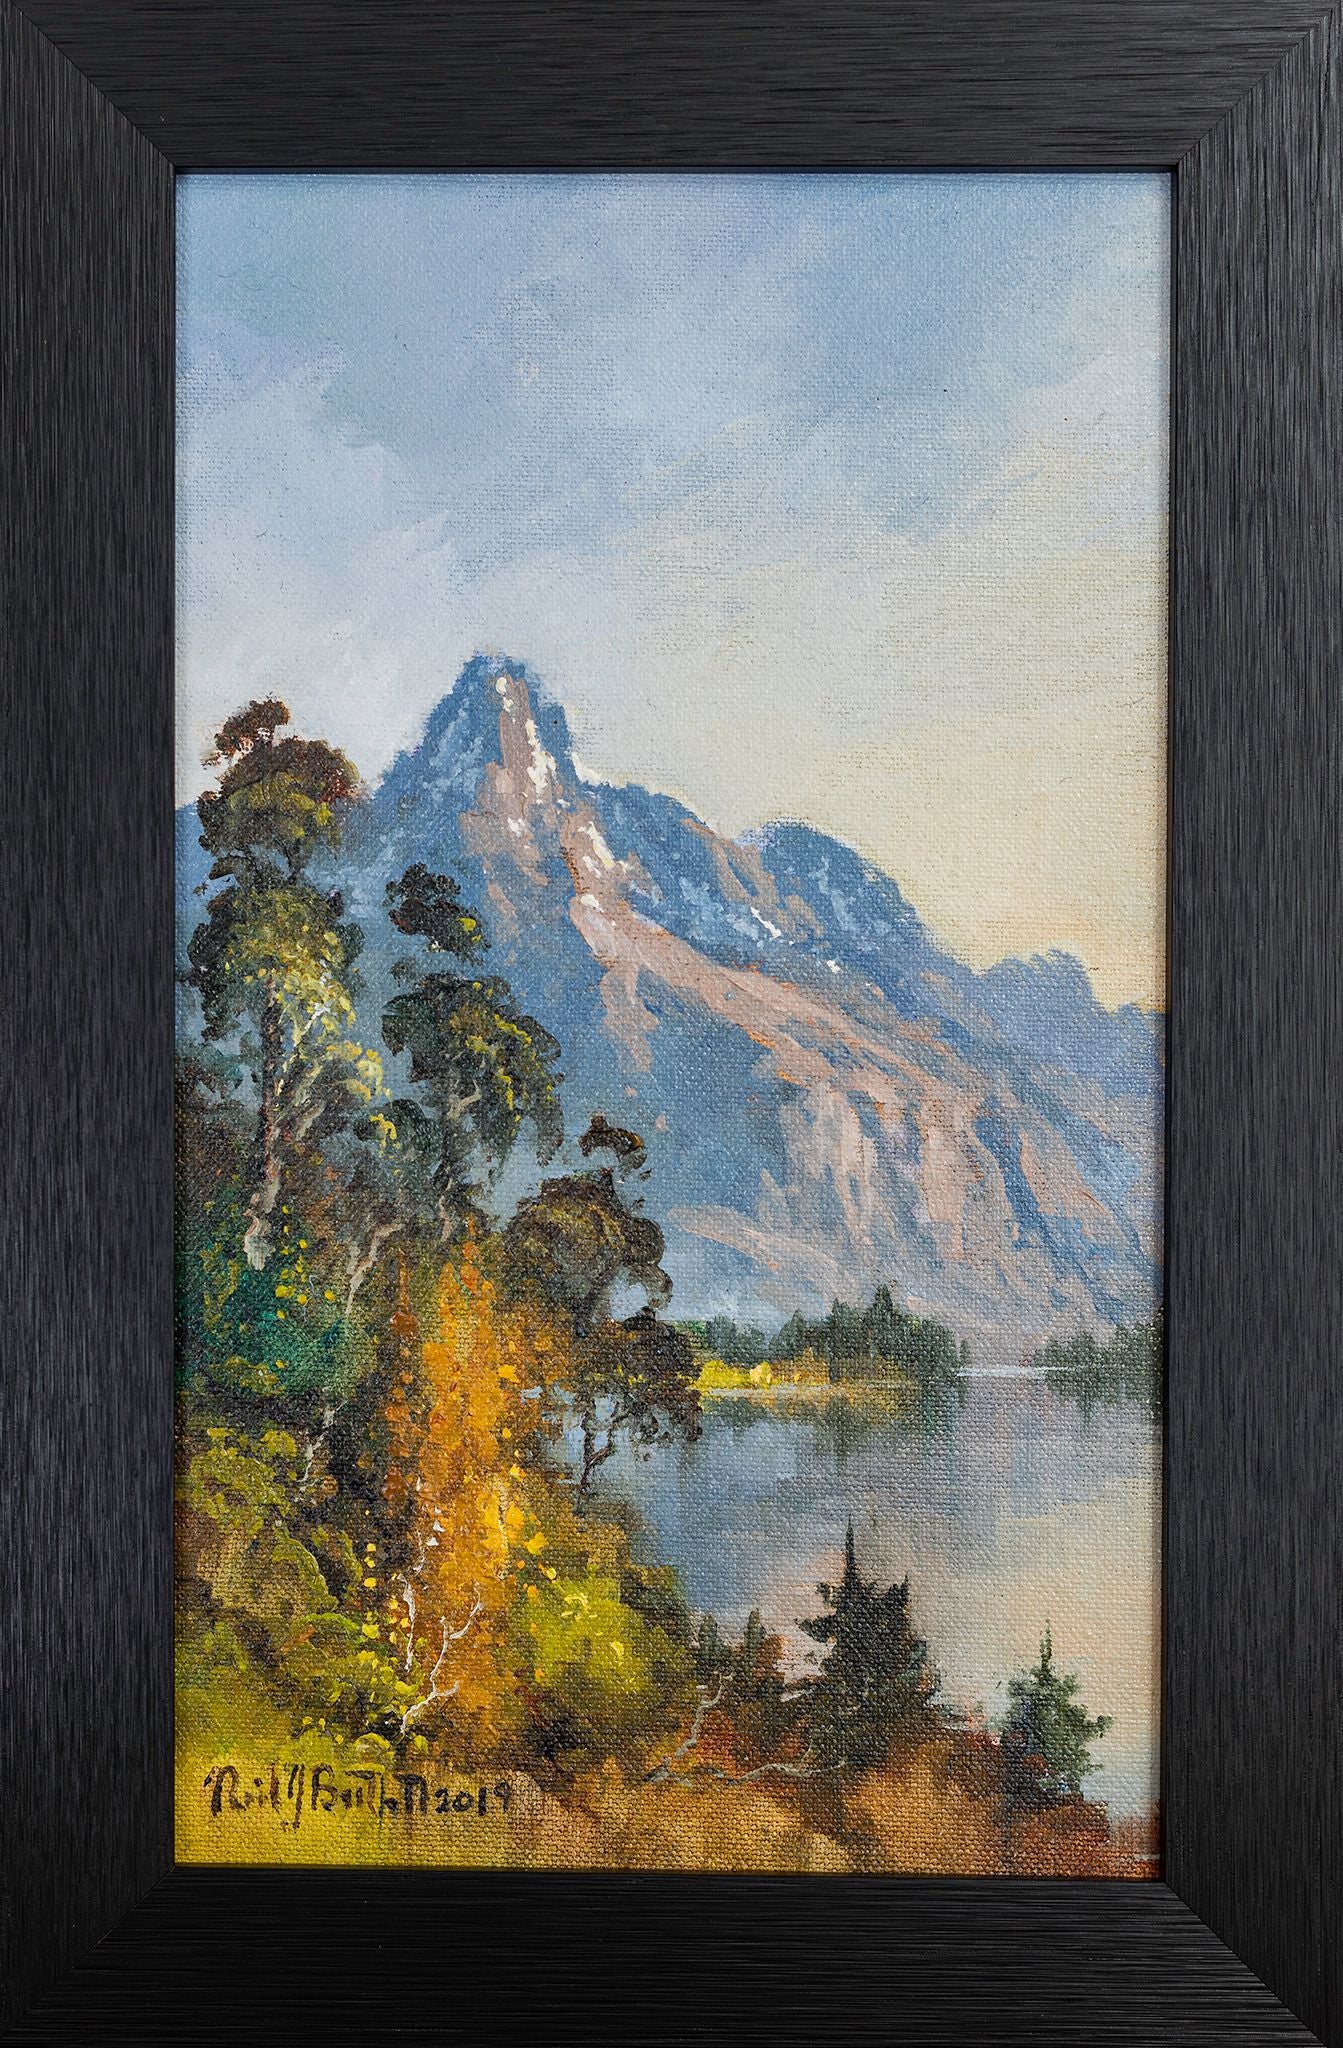 Framed Oil Painting by Neil J Bartlett Walter Peak Queenstown New Zealand Silver Fern Gallery